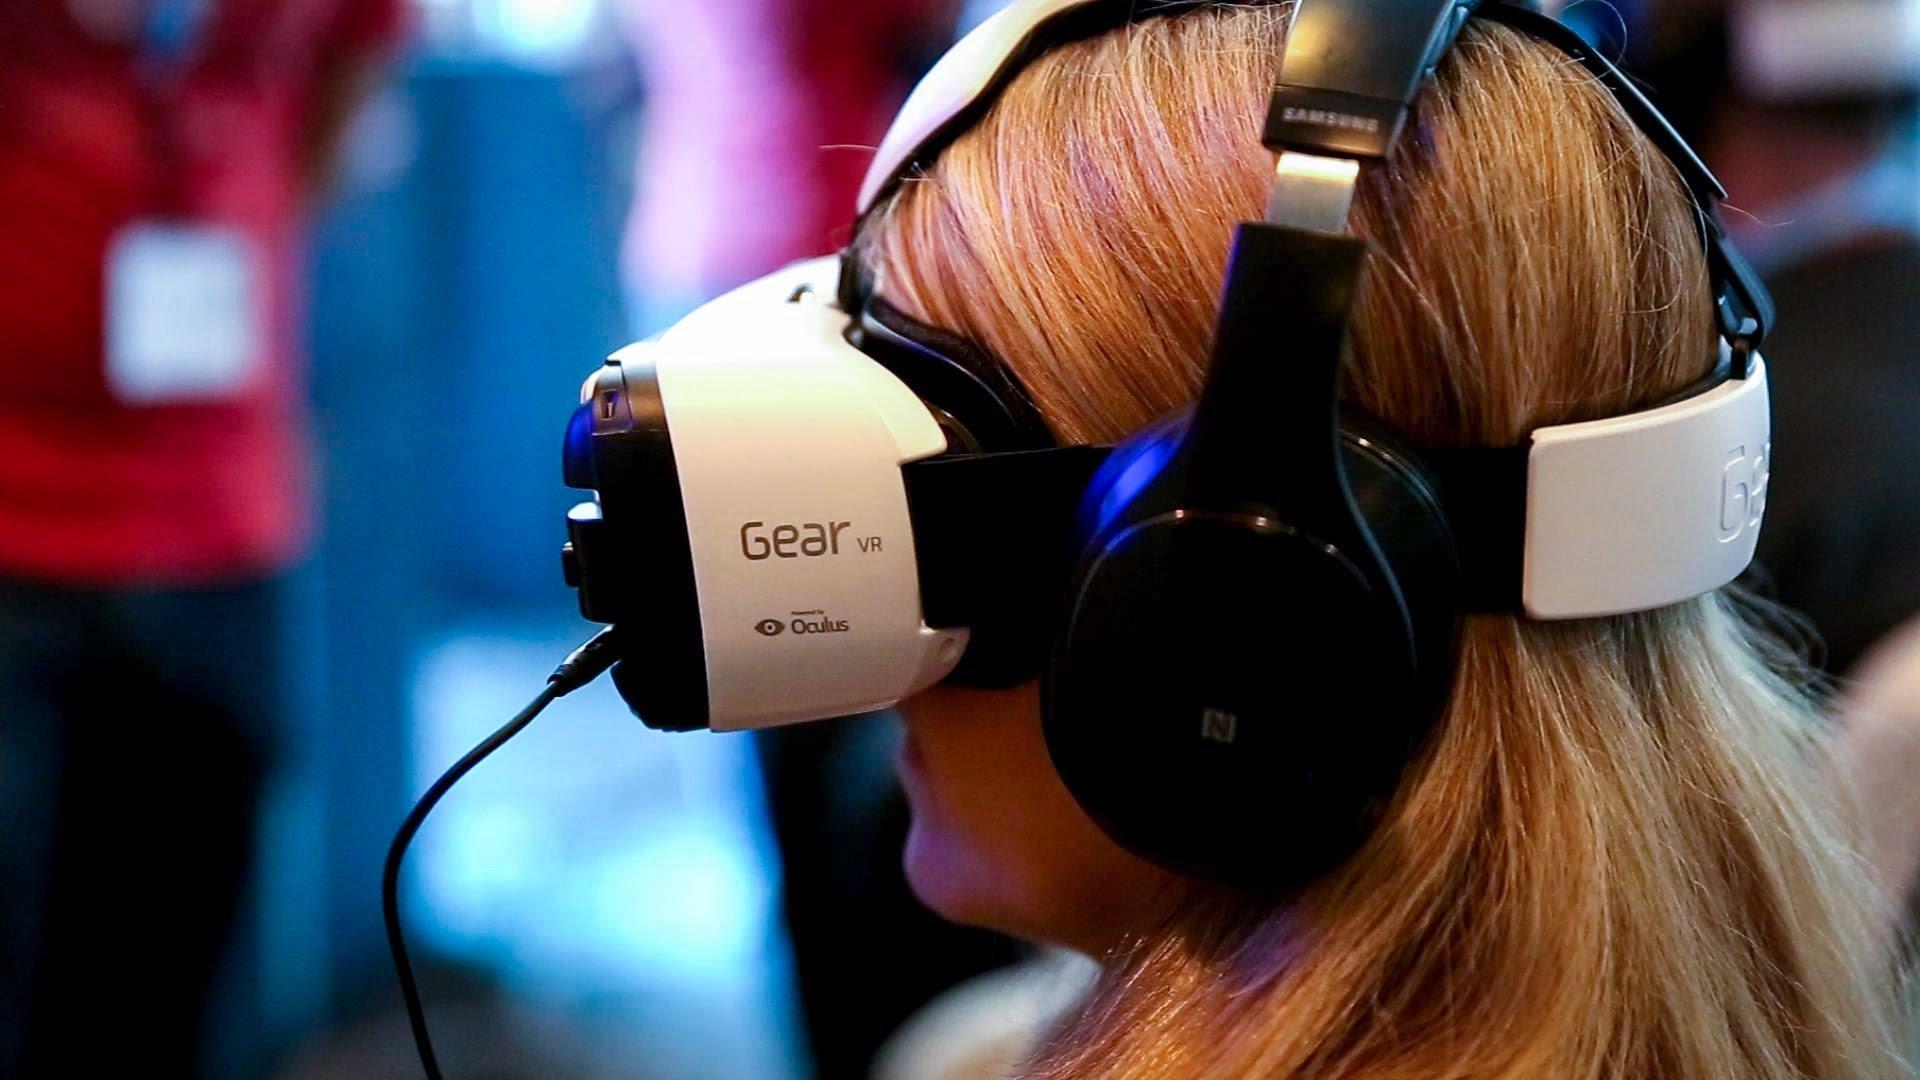 Samsung VR: окно в другой мир